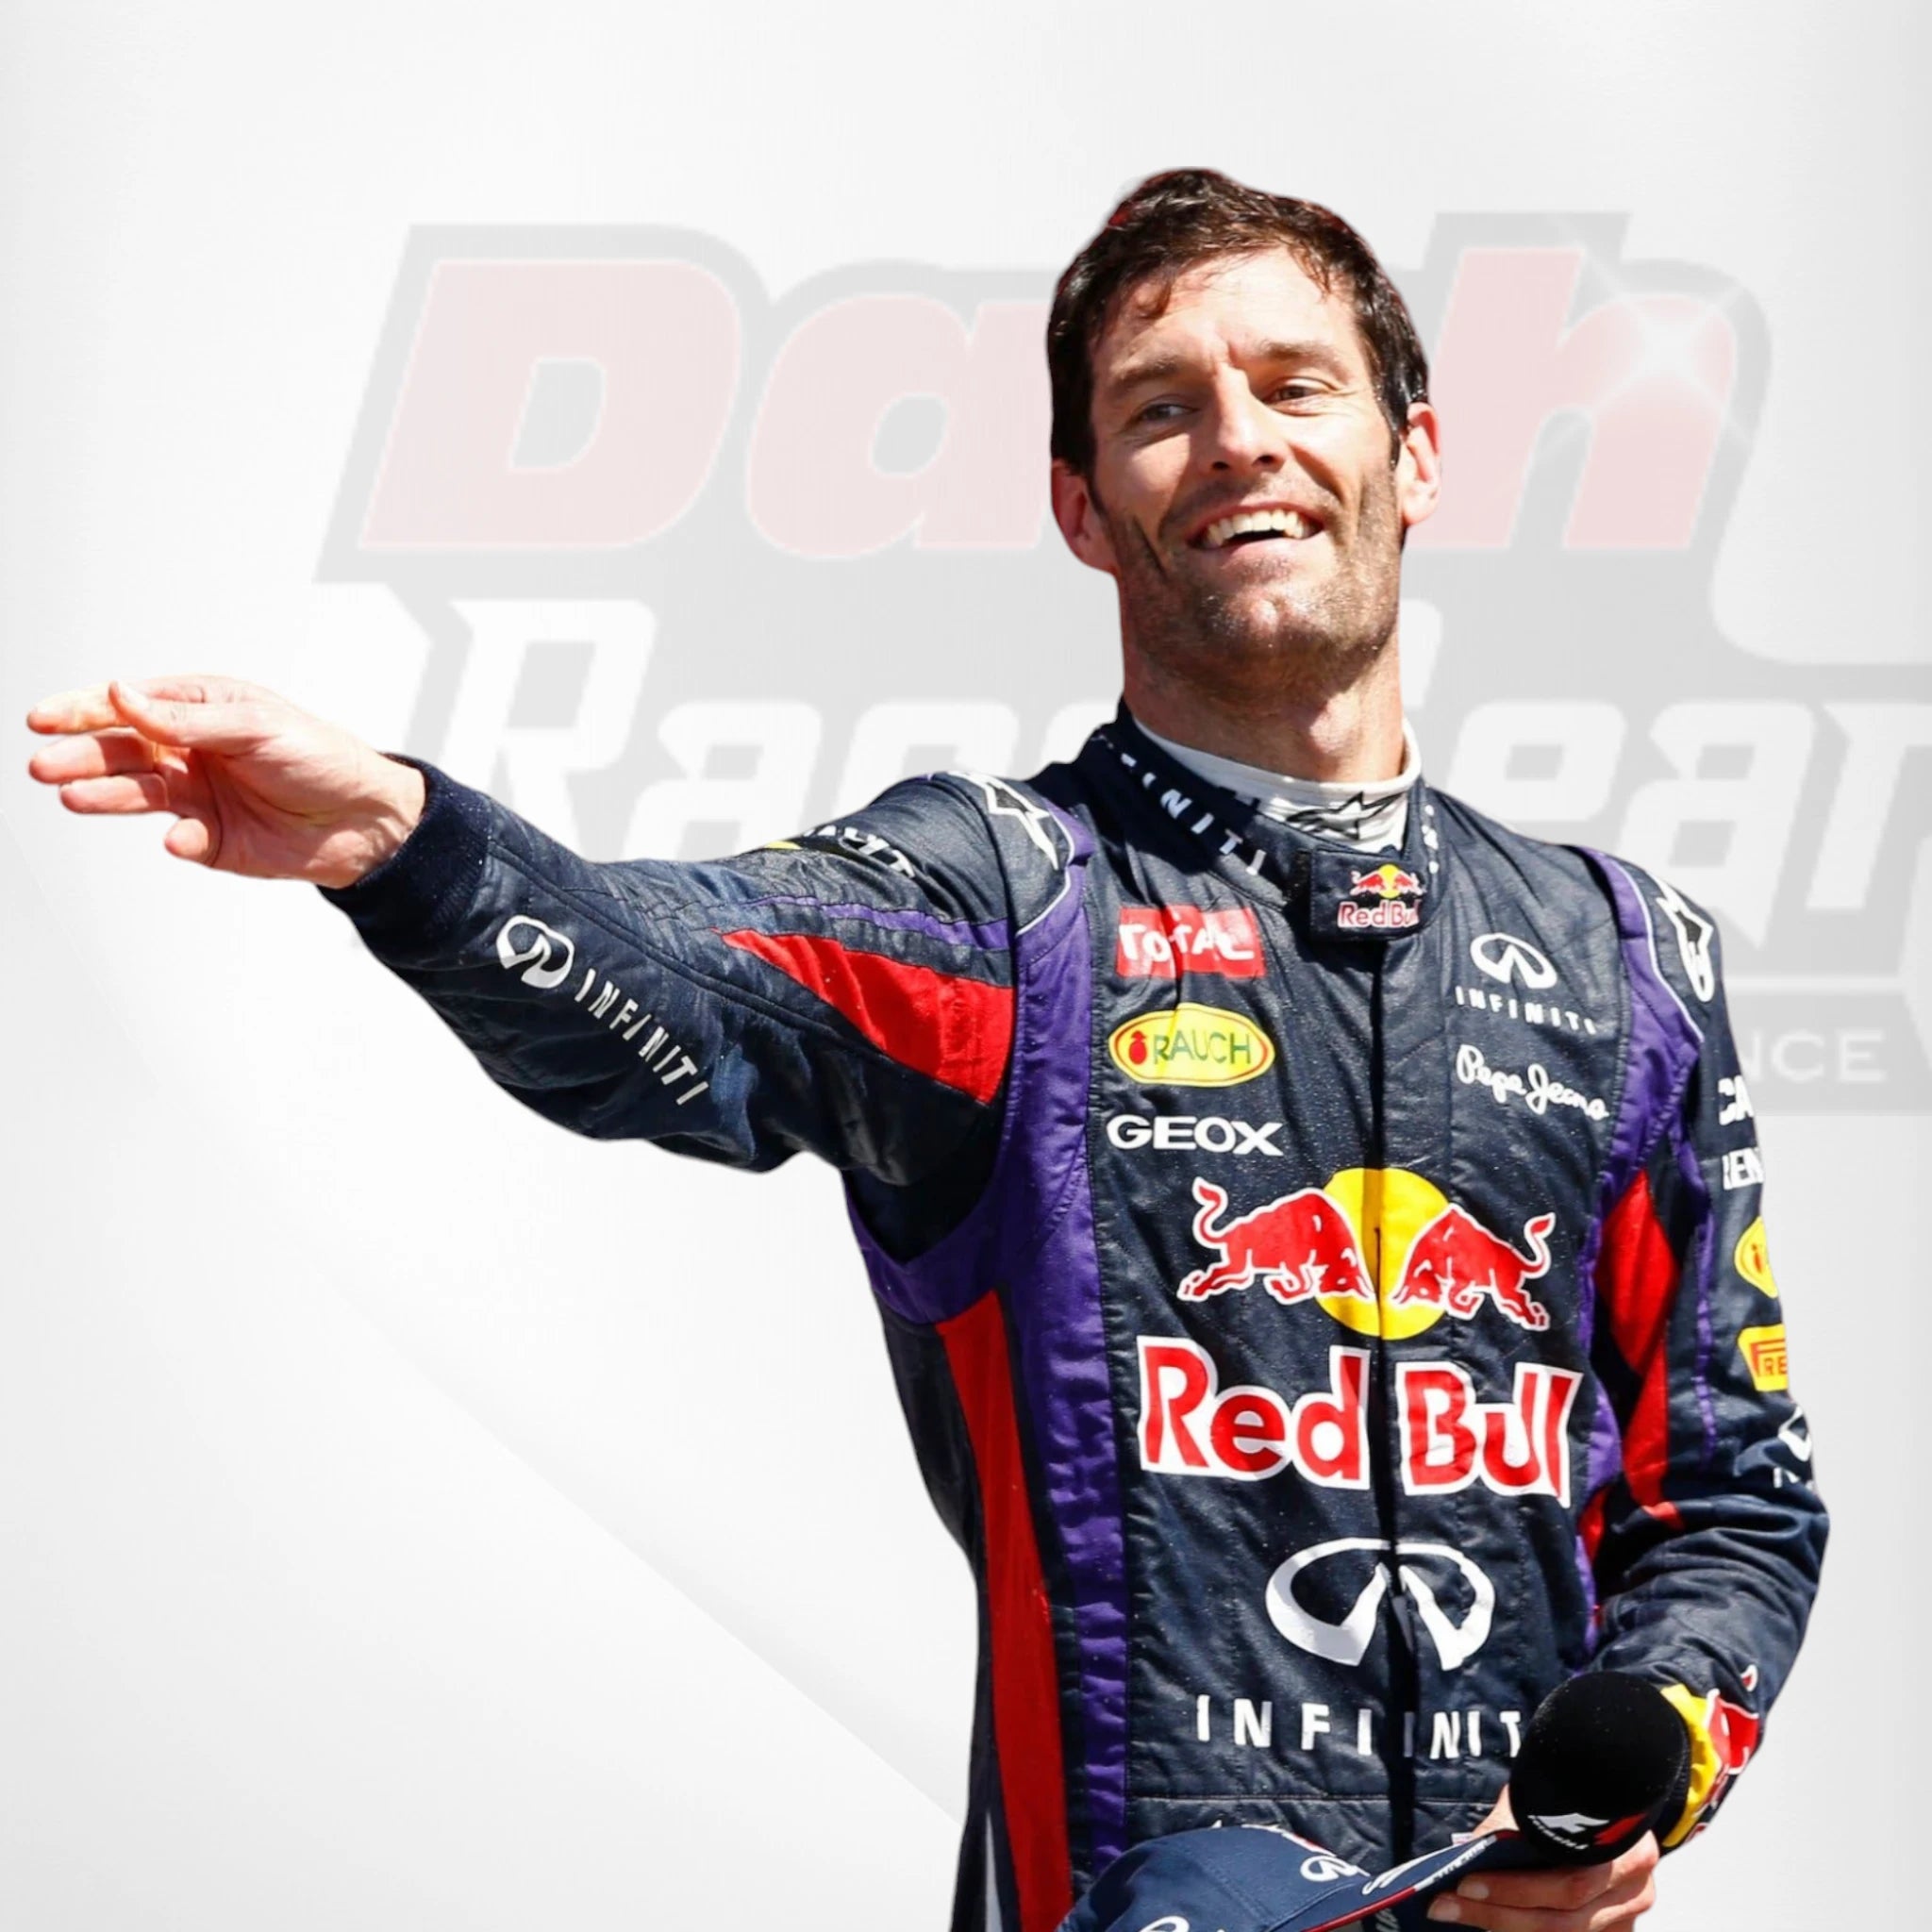 2013 Red Bull Mark Webber F1 Team Race Suit